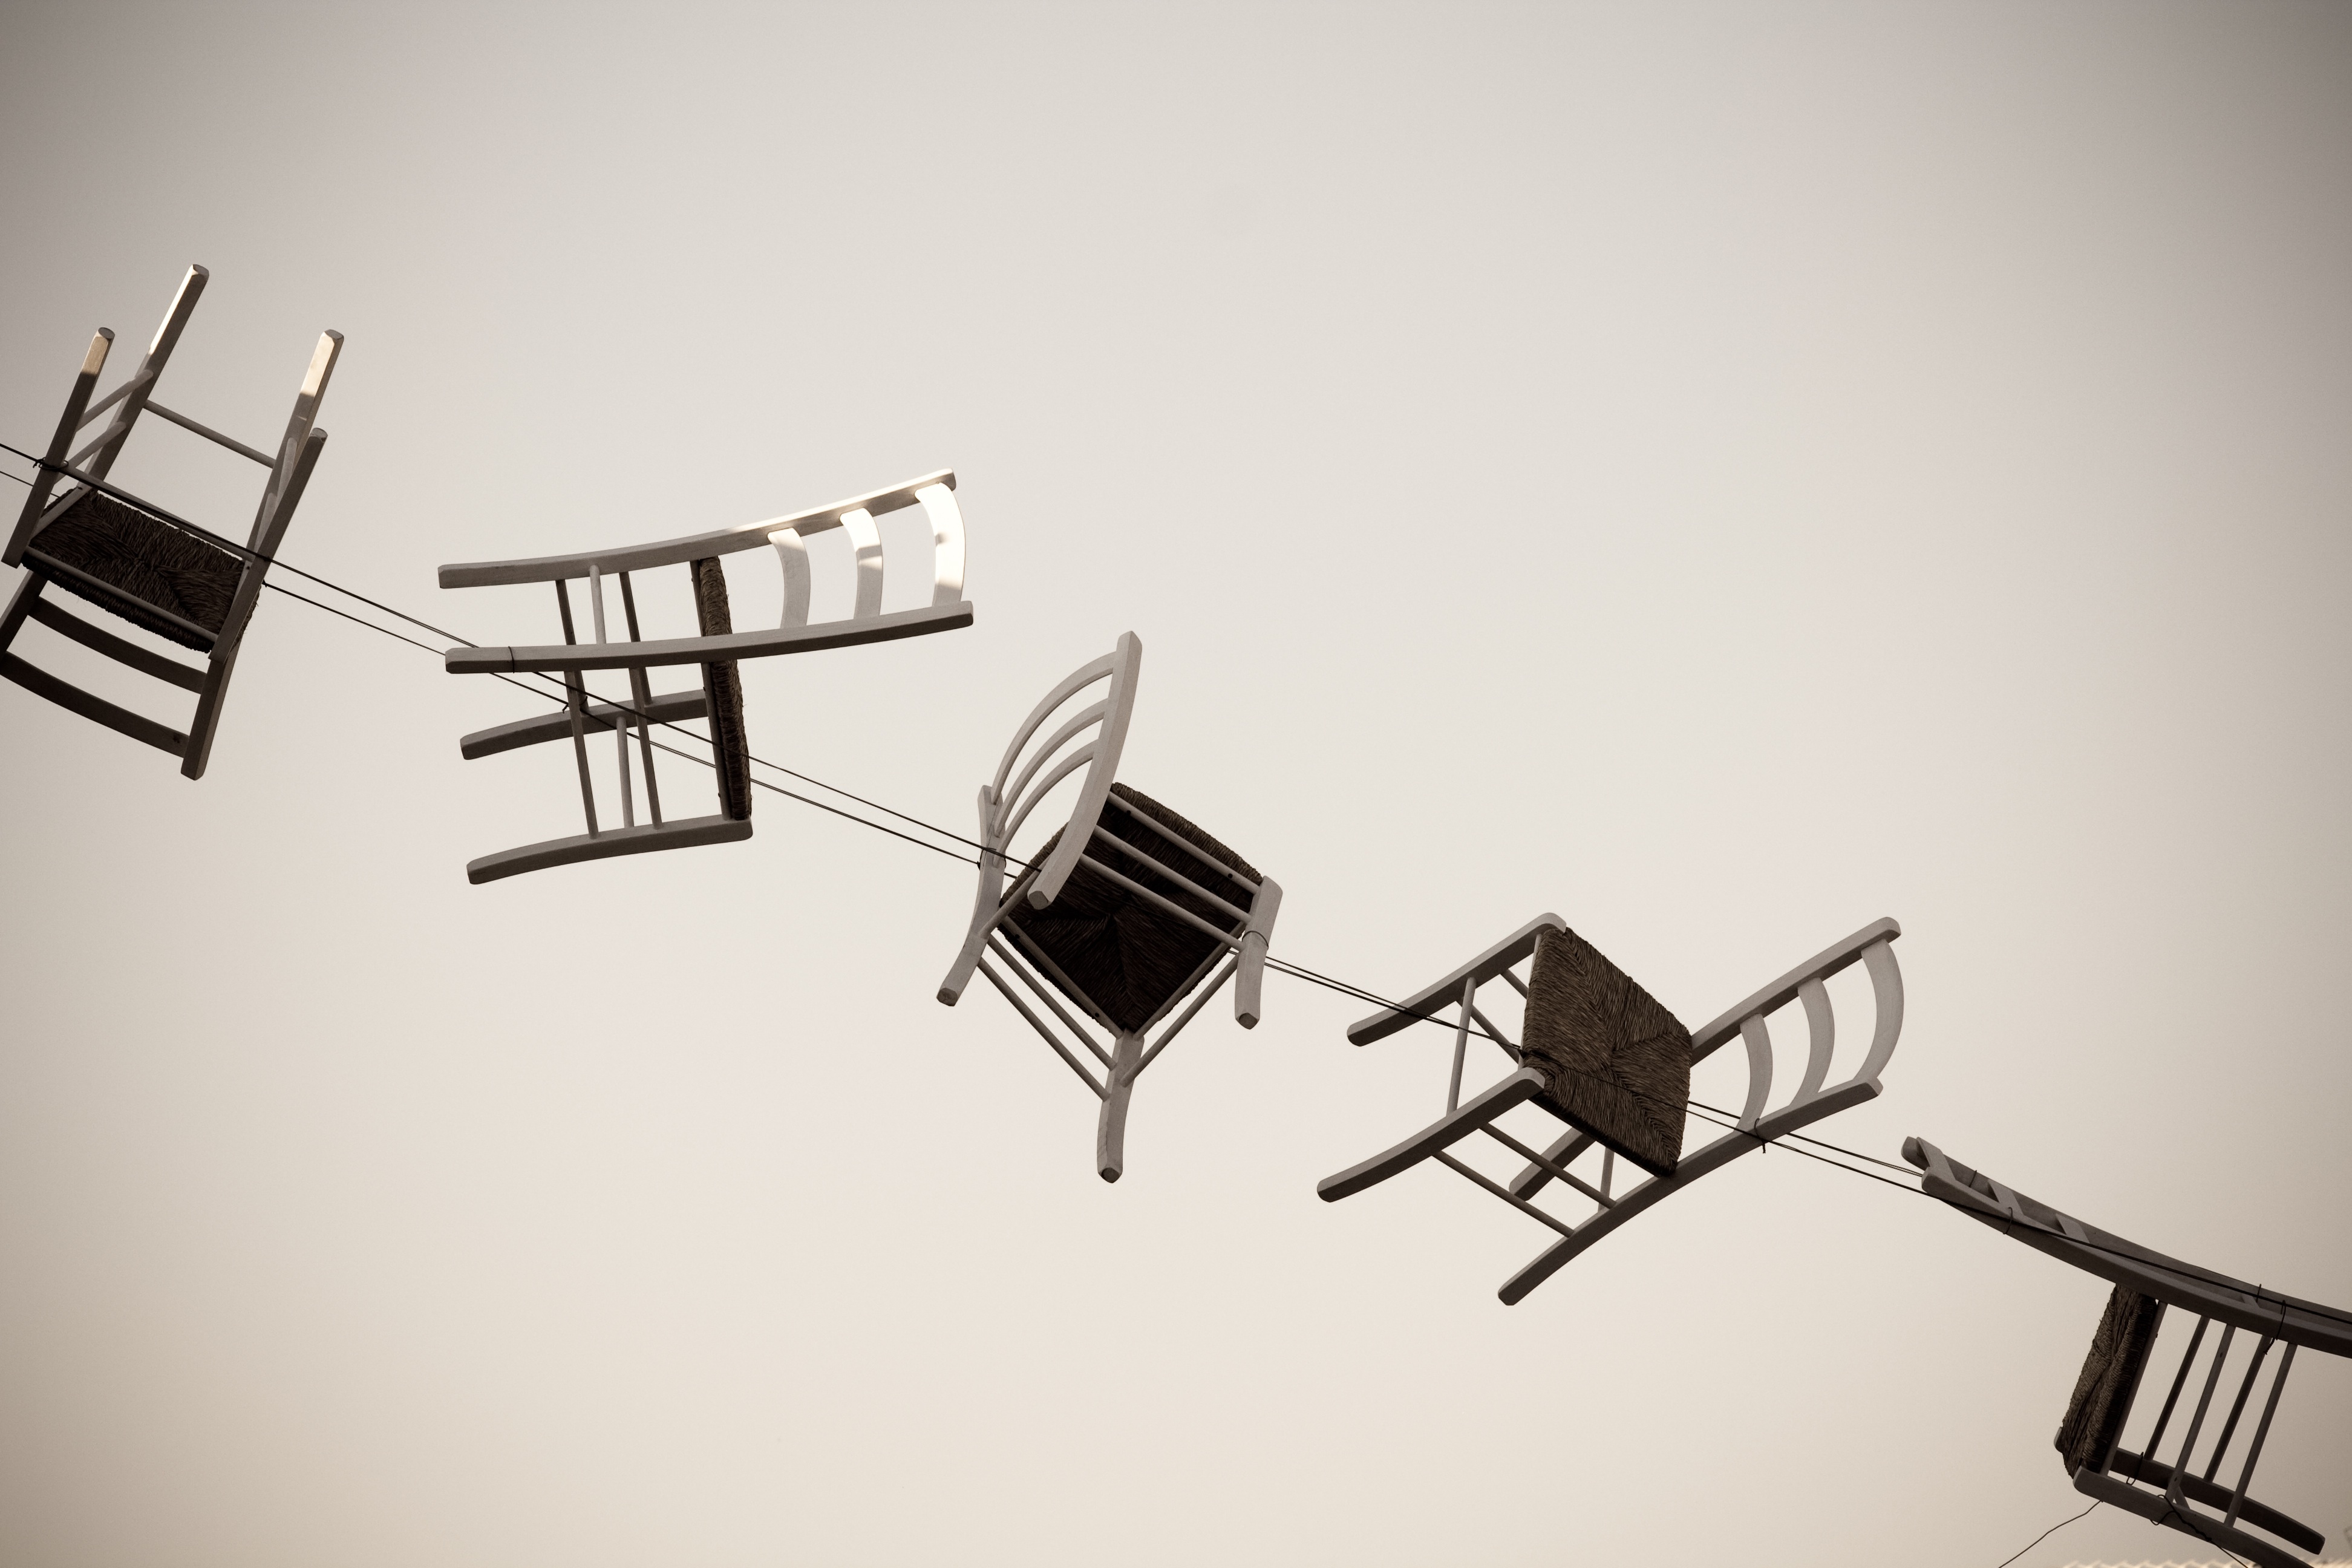 καρέκλες συνδεμένες μεταξύ τους με σύρμα